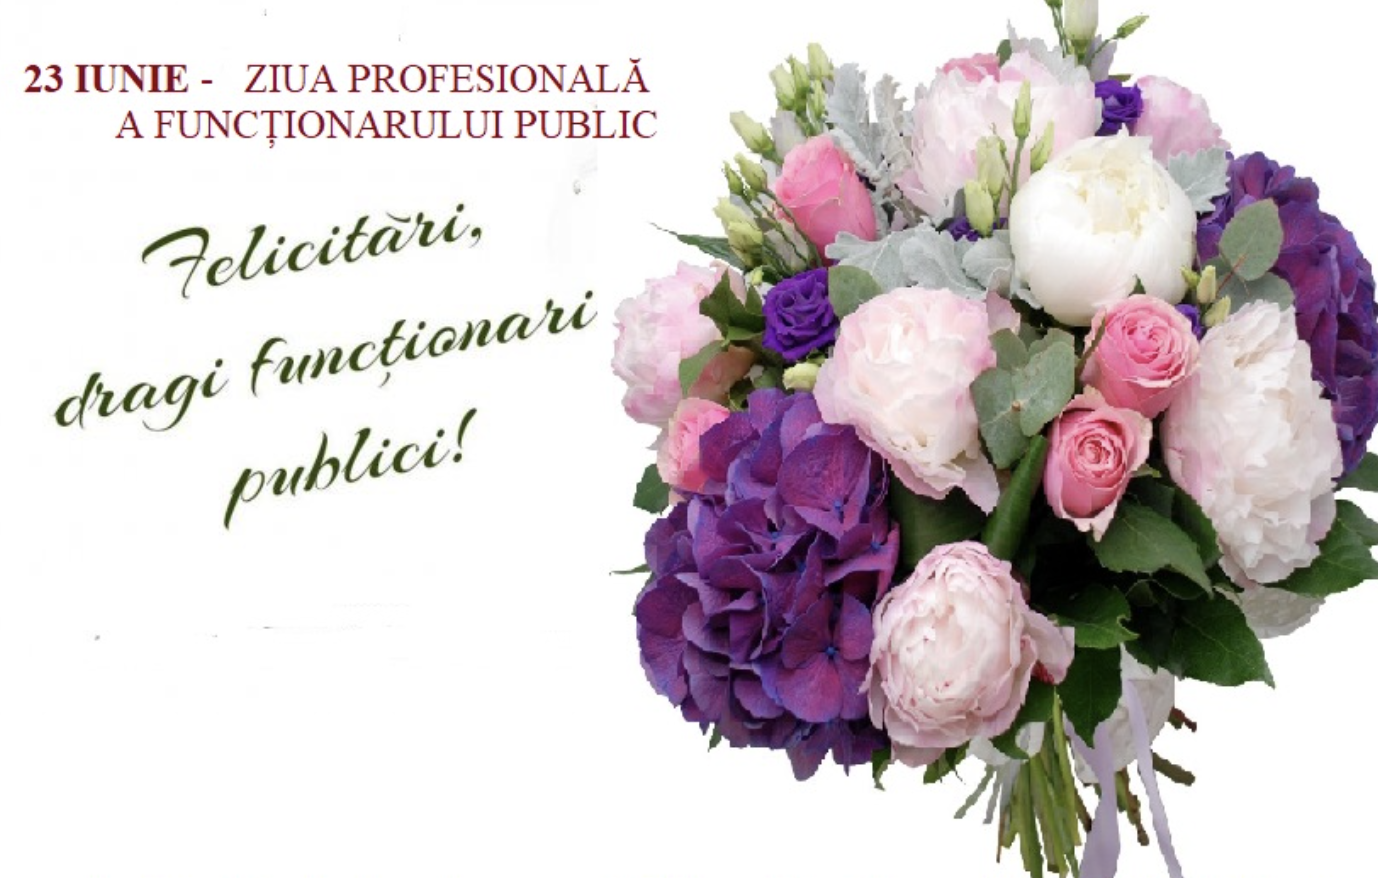 23 Iunie - Ziua profesională a funcționarului public